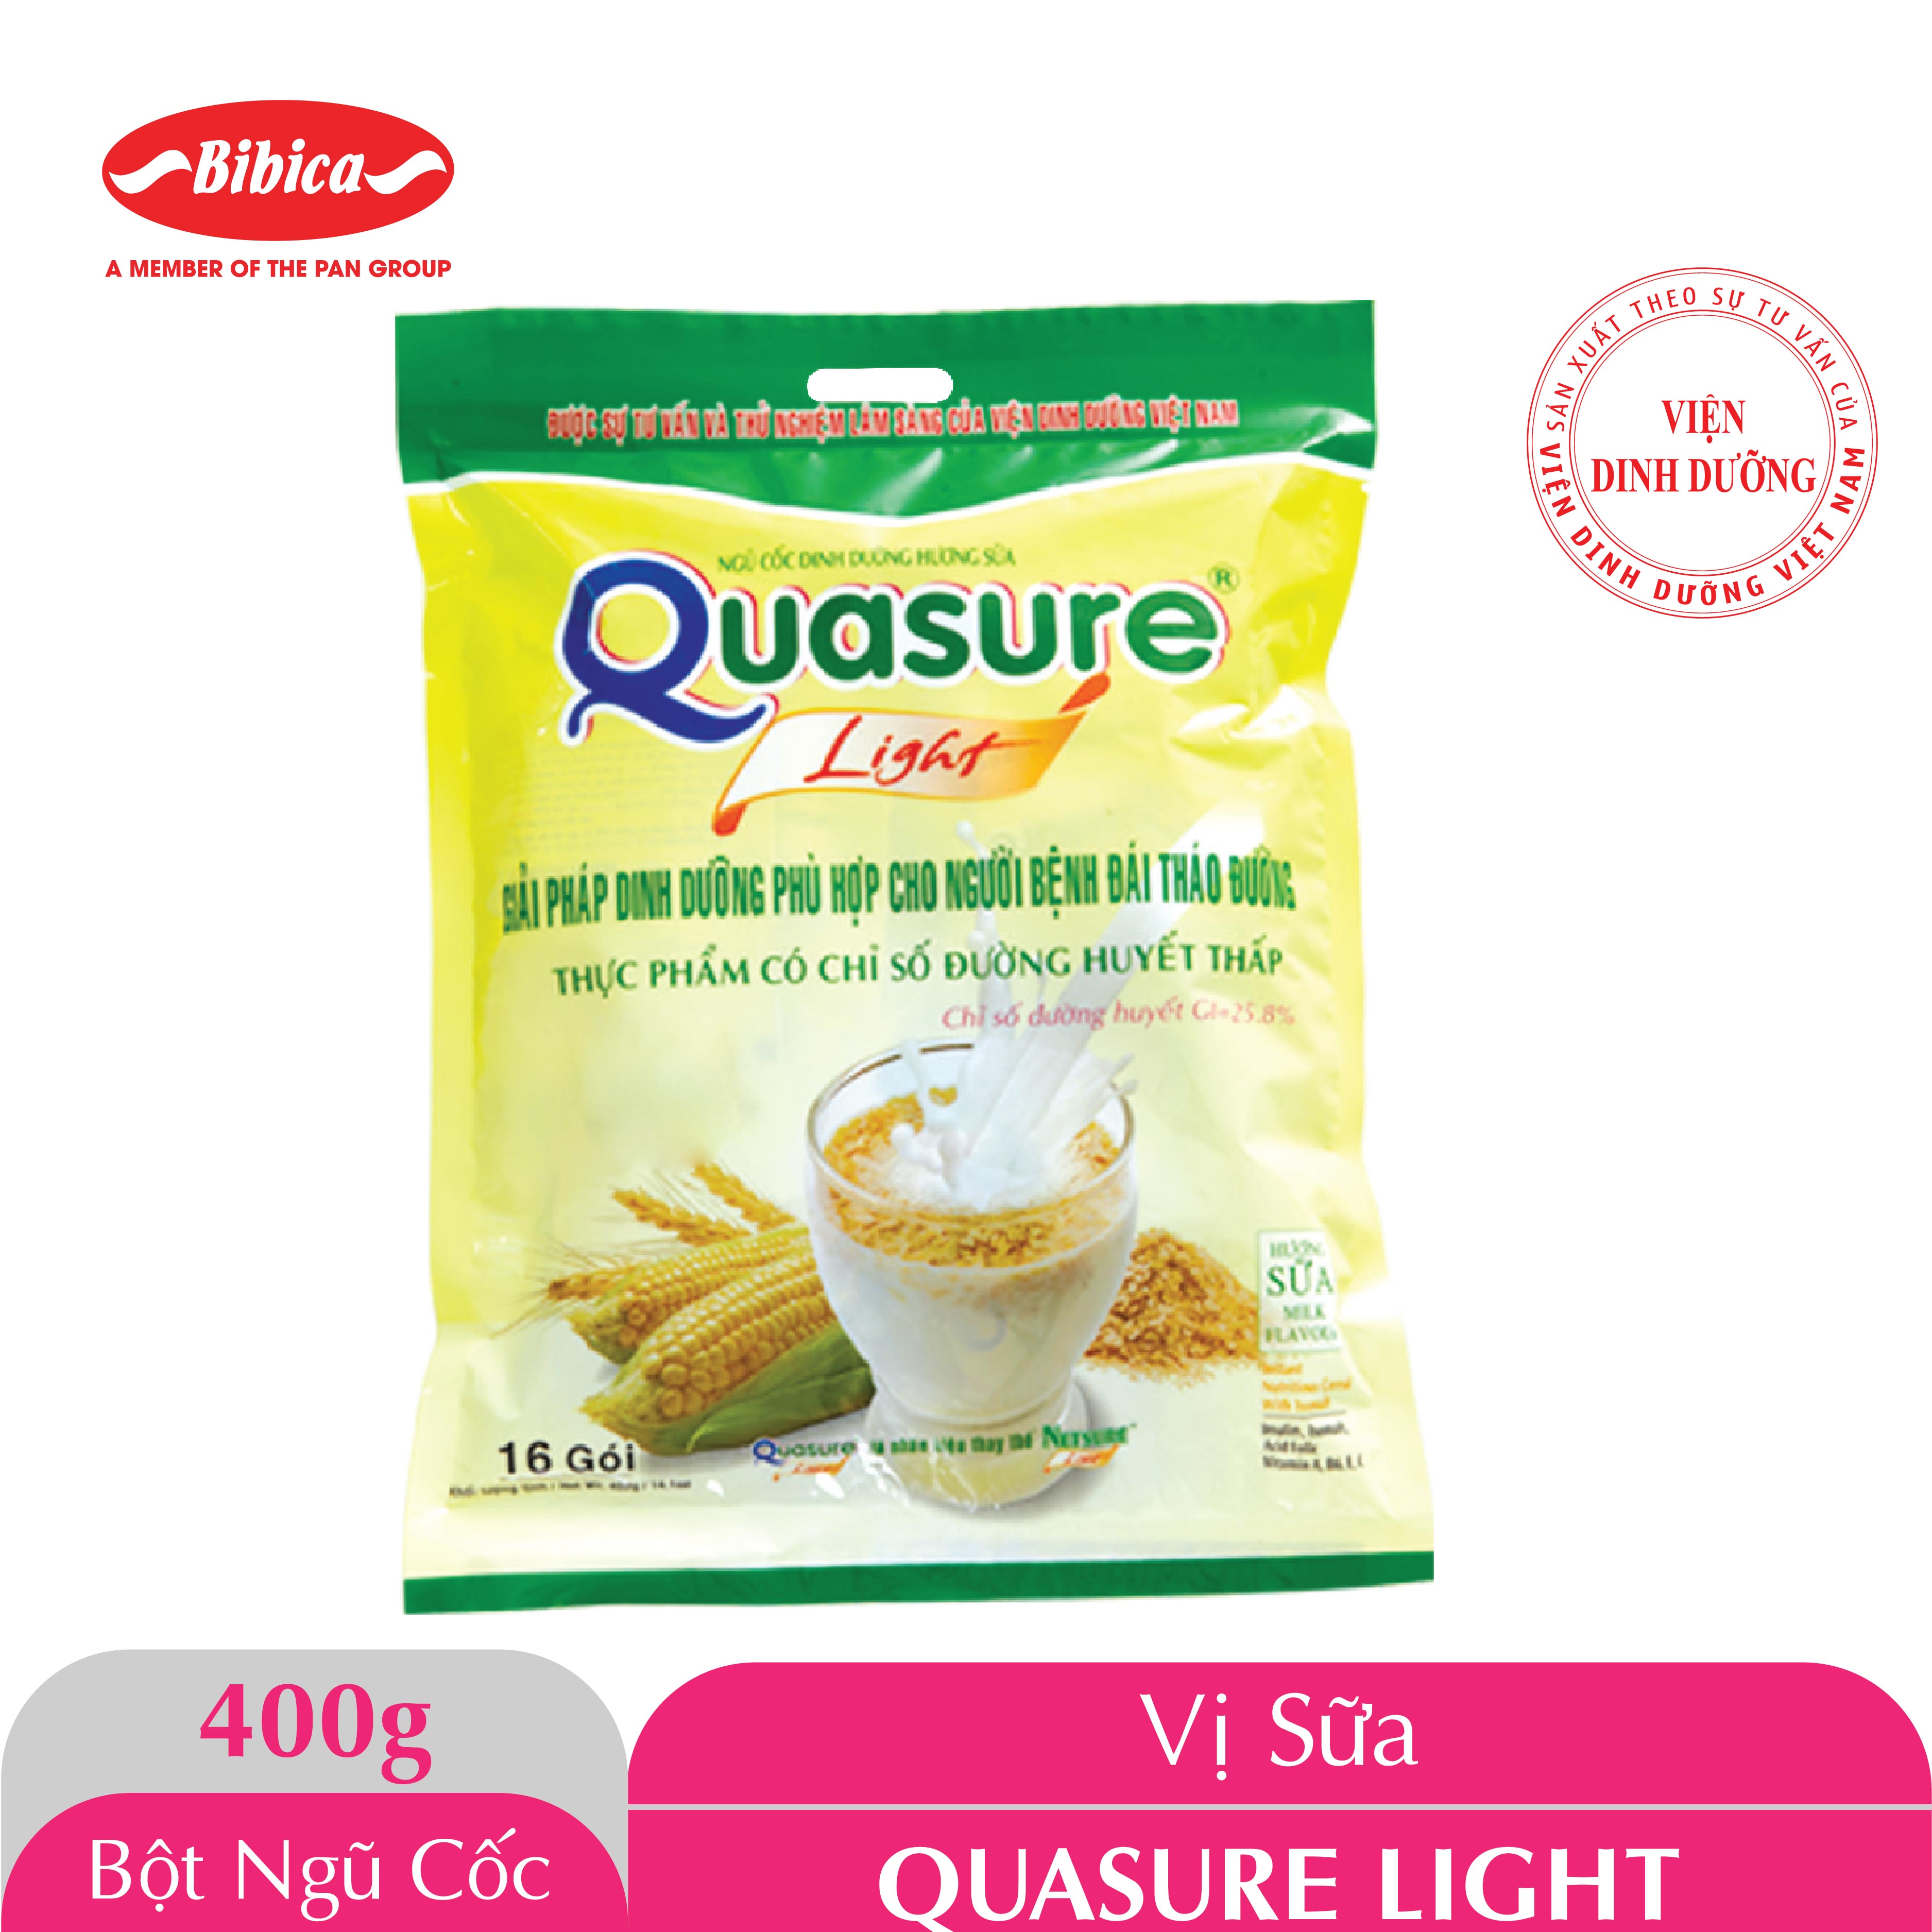 Bột ngũ cốc Quasure Light Sữa túi 400 gram Bibica cho người tiểu đường đái